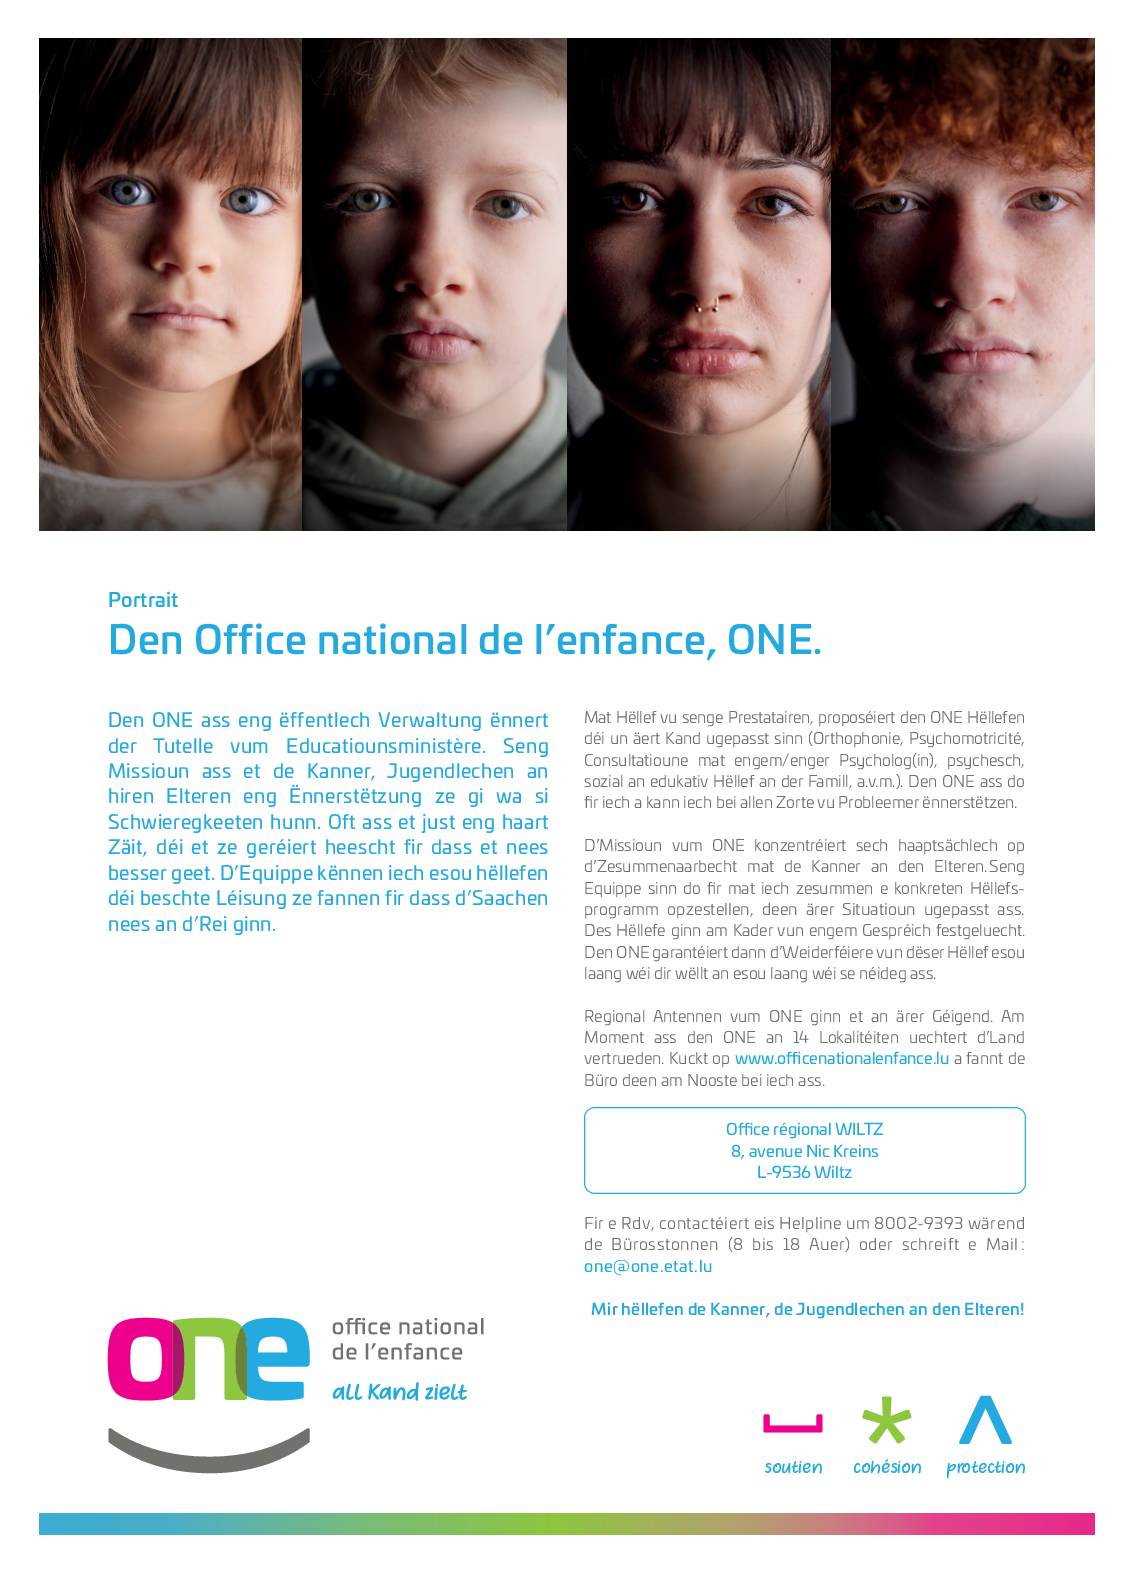 ONE - Office national de l'enfance